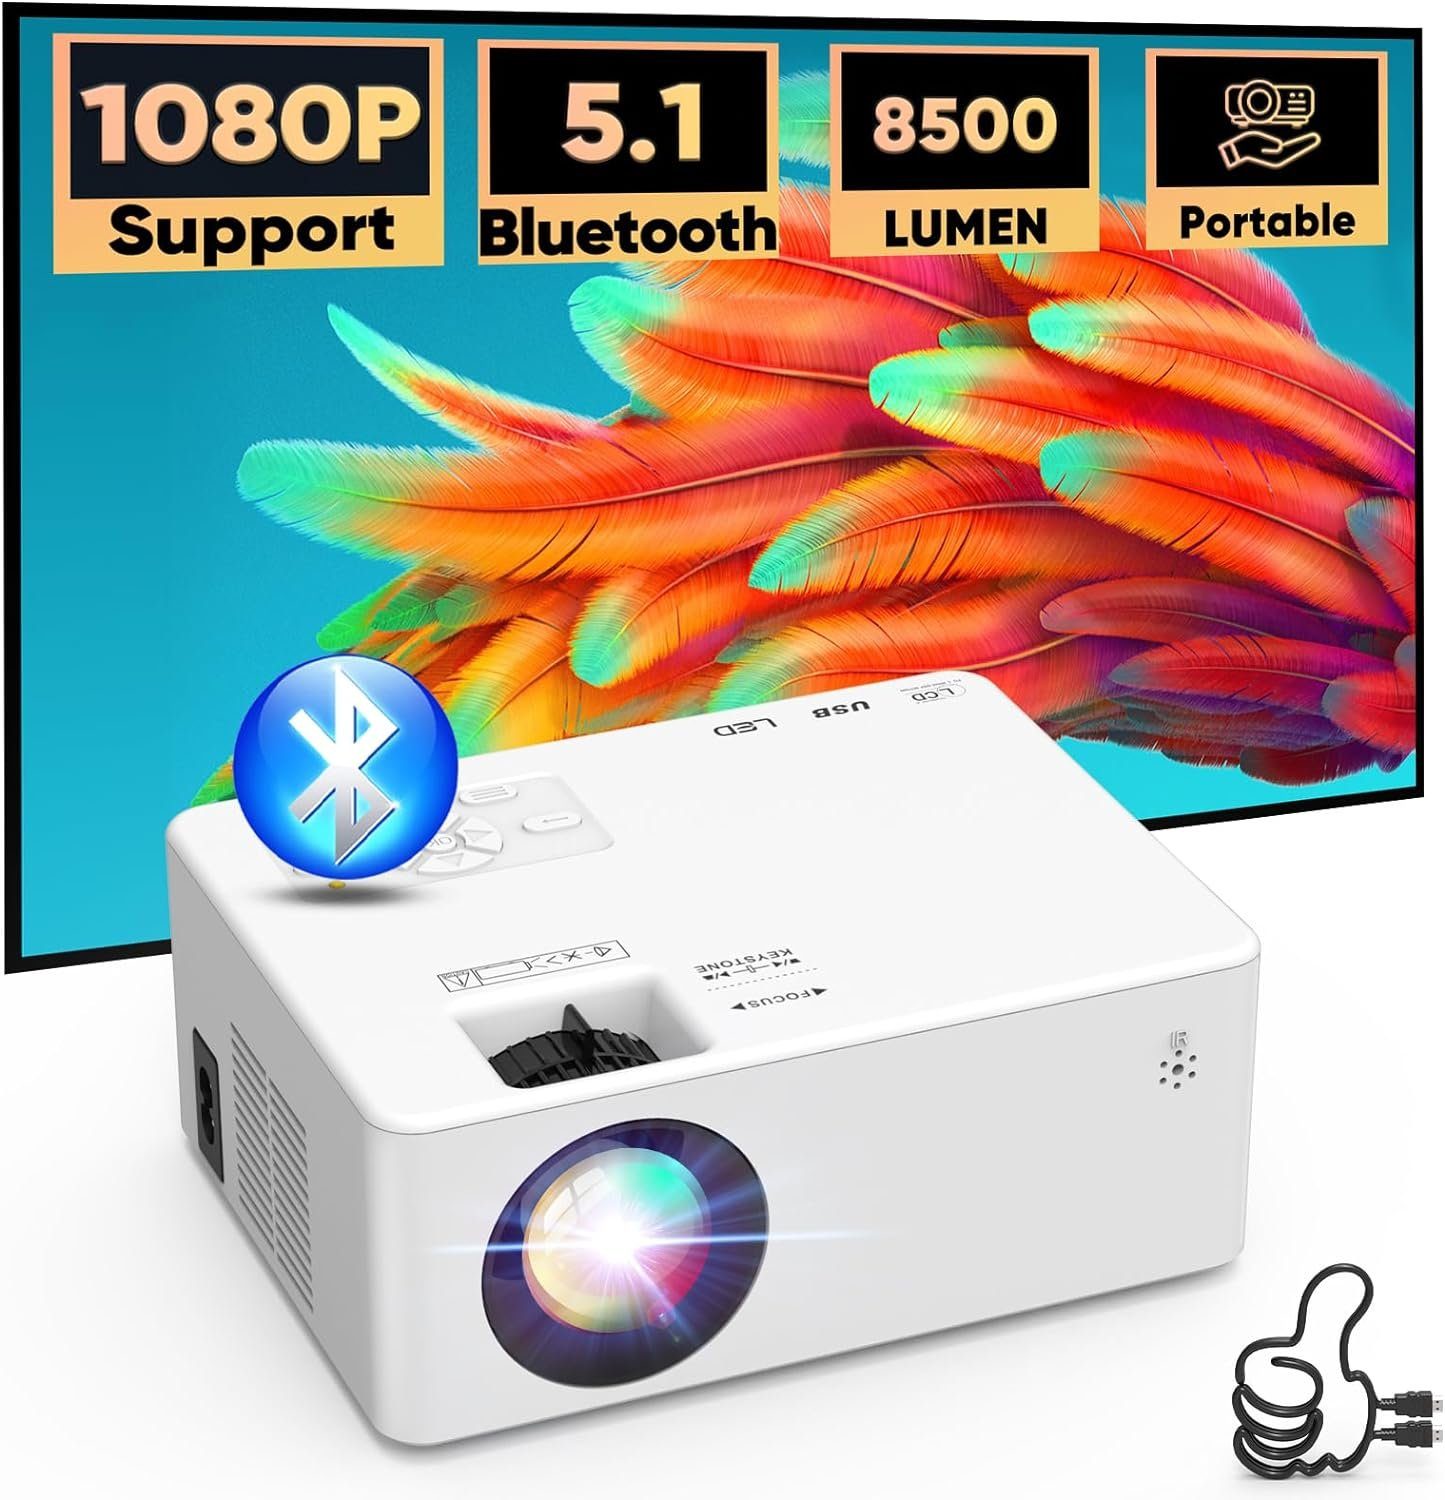 AKATUO Portabler Projektor (5000:1, 1920 x 1080 px, Bluetooth Mini Beamer 8500 Lumen Full HD 1080P Heimkino Kompatibel)